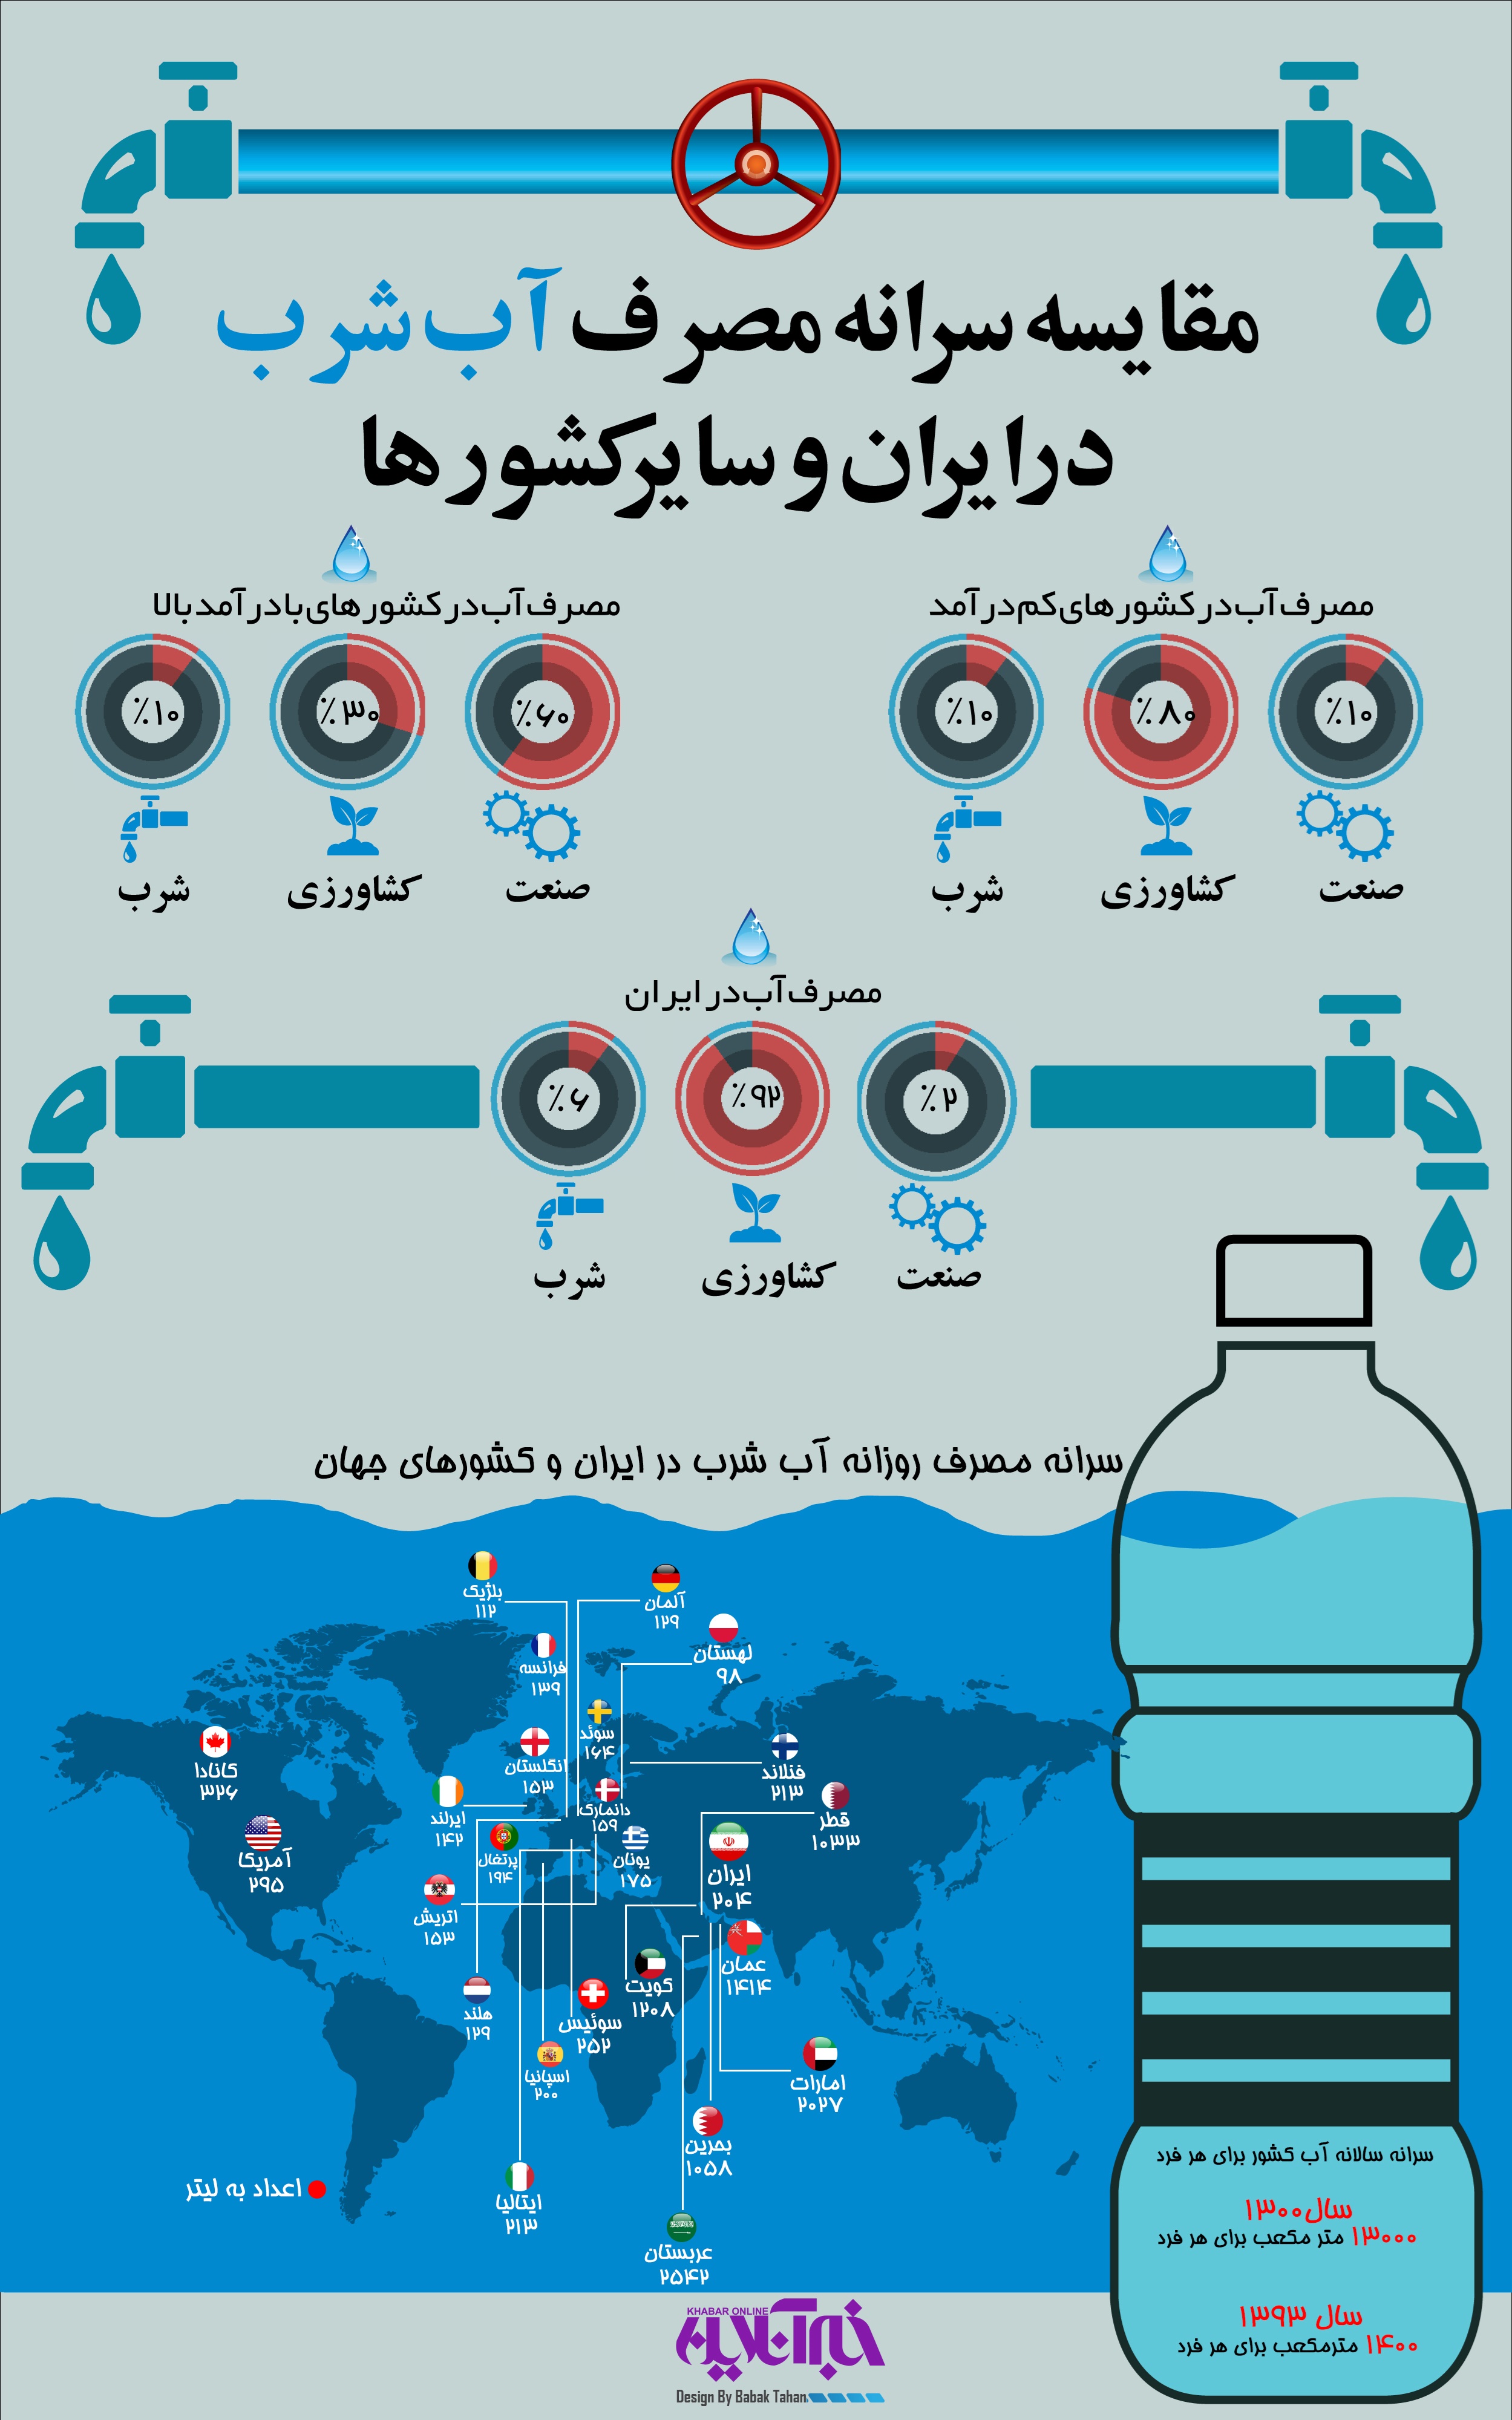 کمبود آب در ایران و جهان
